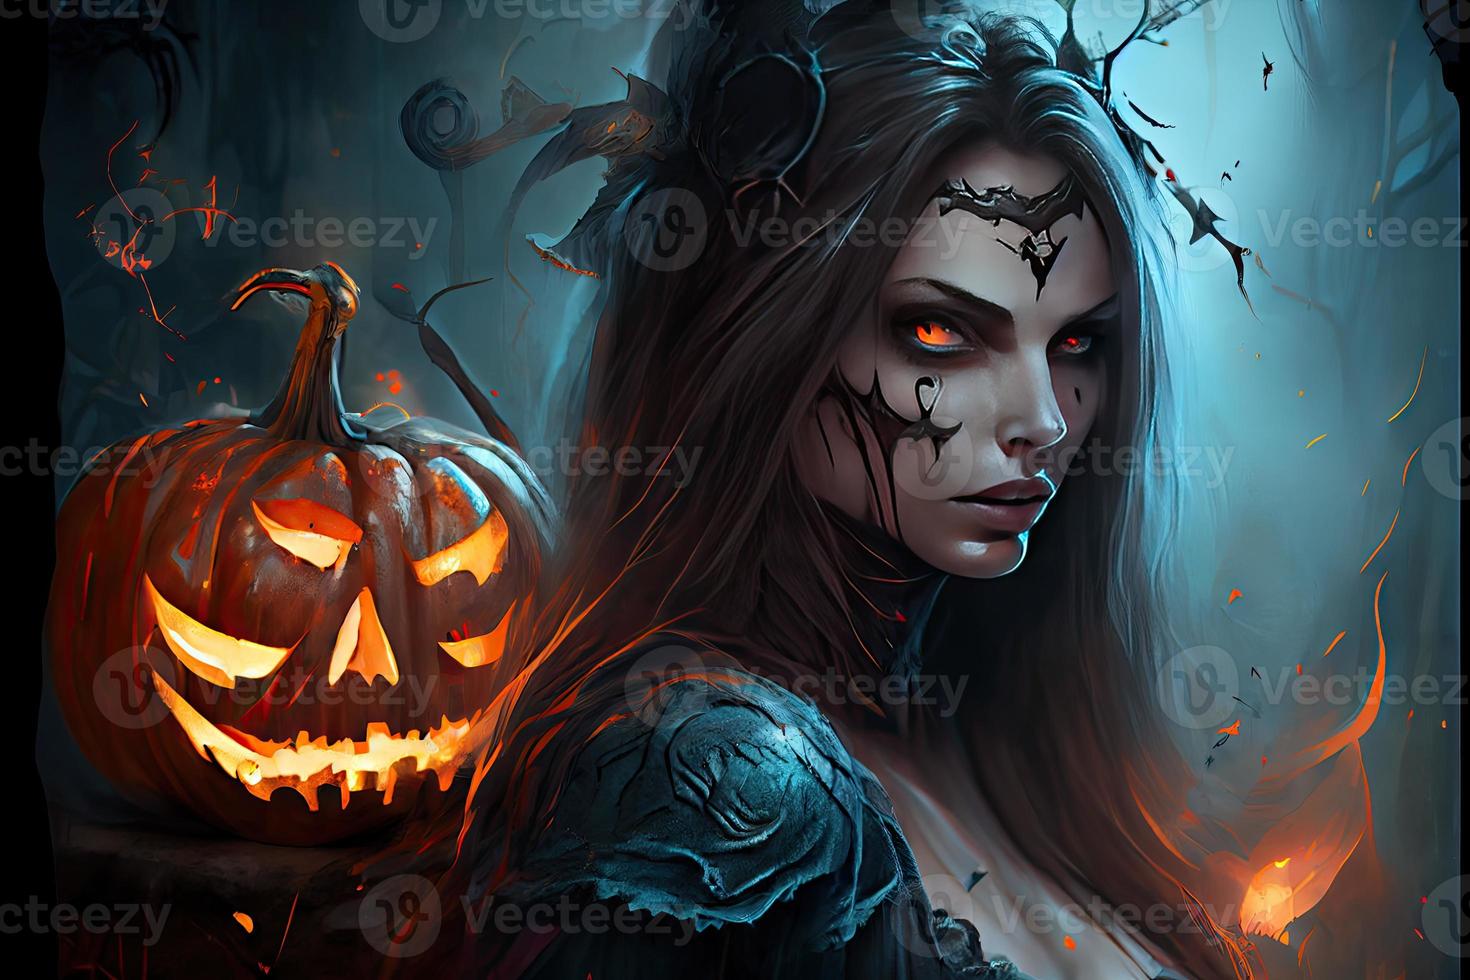 jour d'halloween yeux de jack o' lanternes tromper ou traiter samhain toussaint veille de tous les saints tout halloween fantasmagorique horreur fantôme démon fond 31 octobre photo